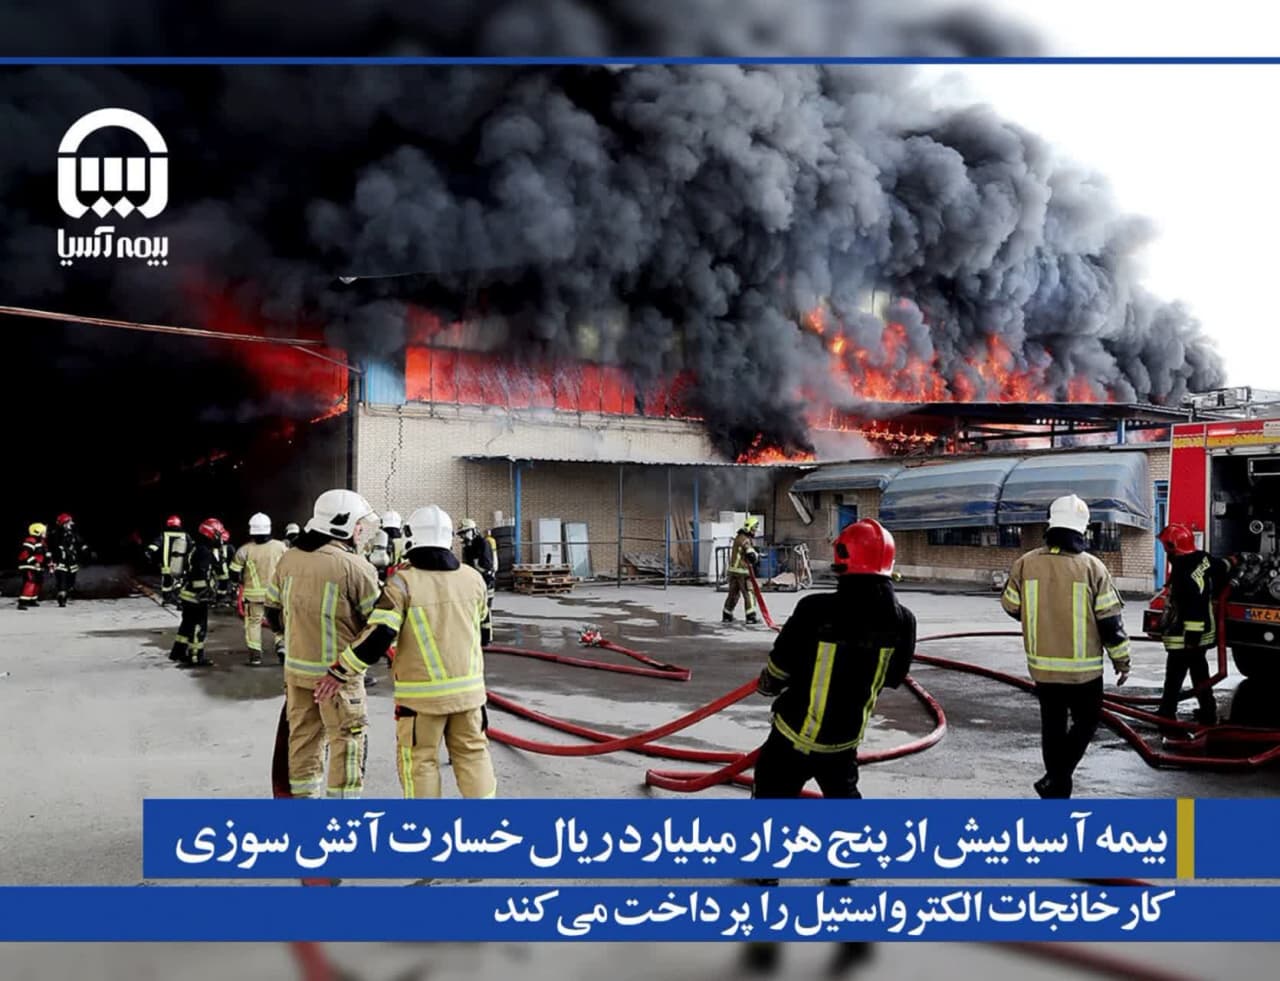 بیمه آسیا بیش از پنج هزار میلیارد ریال خسارت آتش سوزی کارخانجات الکترواستیل را پرداخت می کند